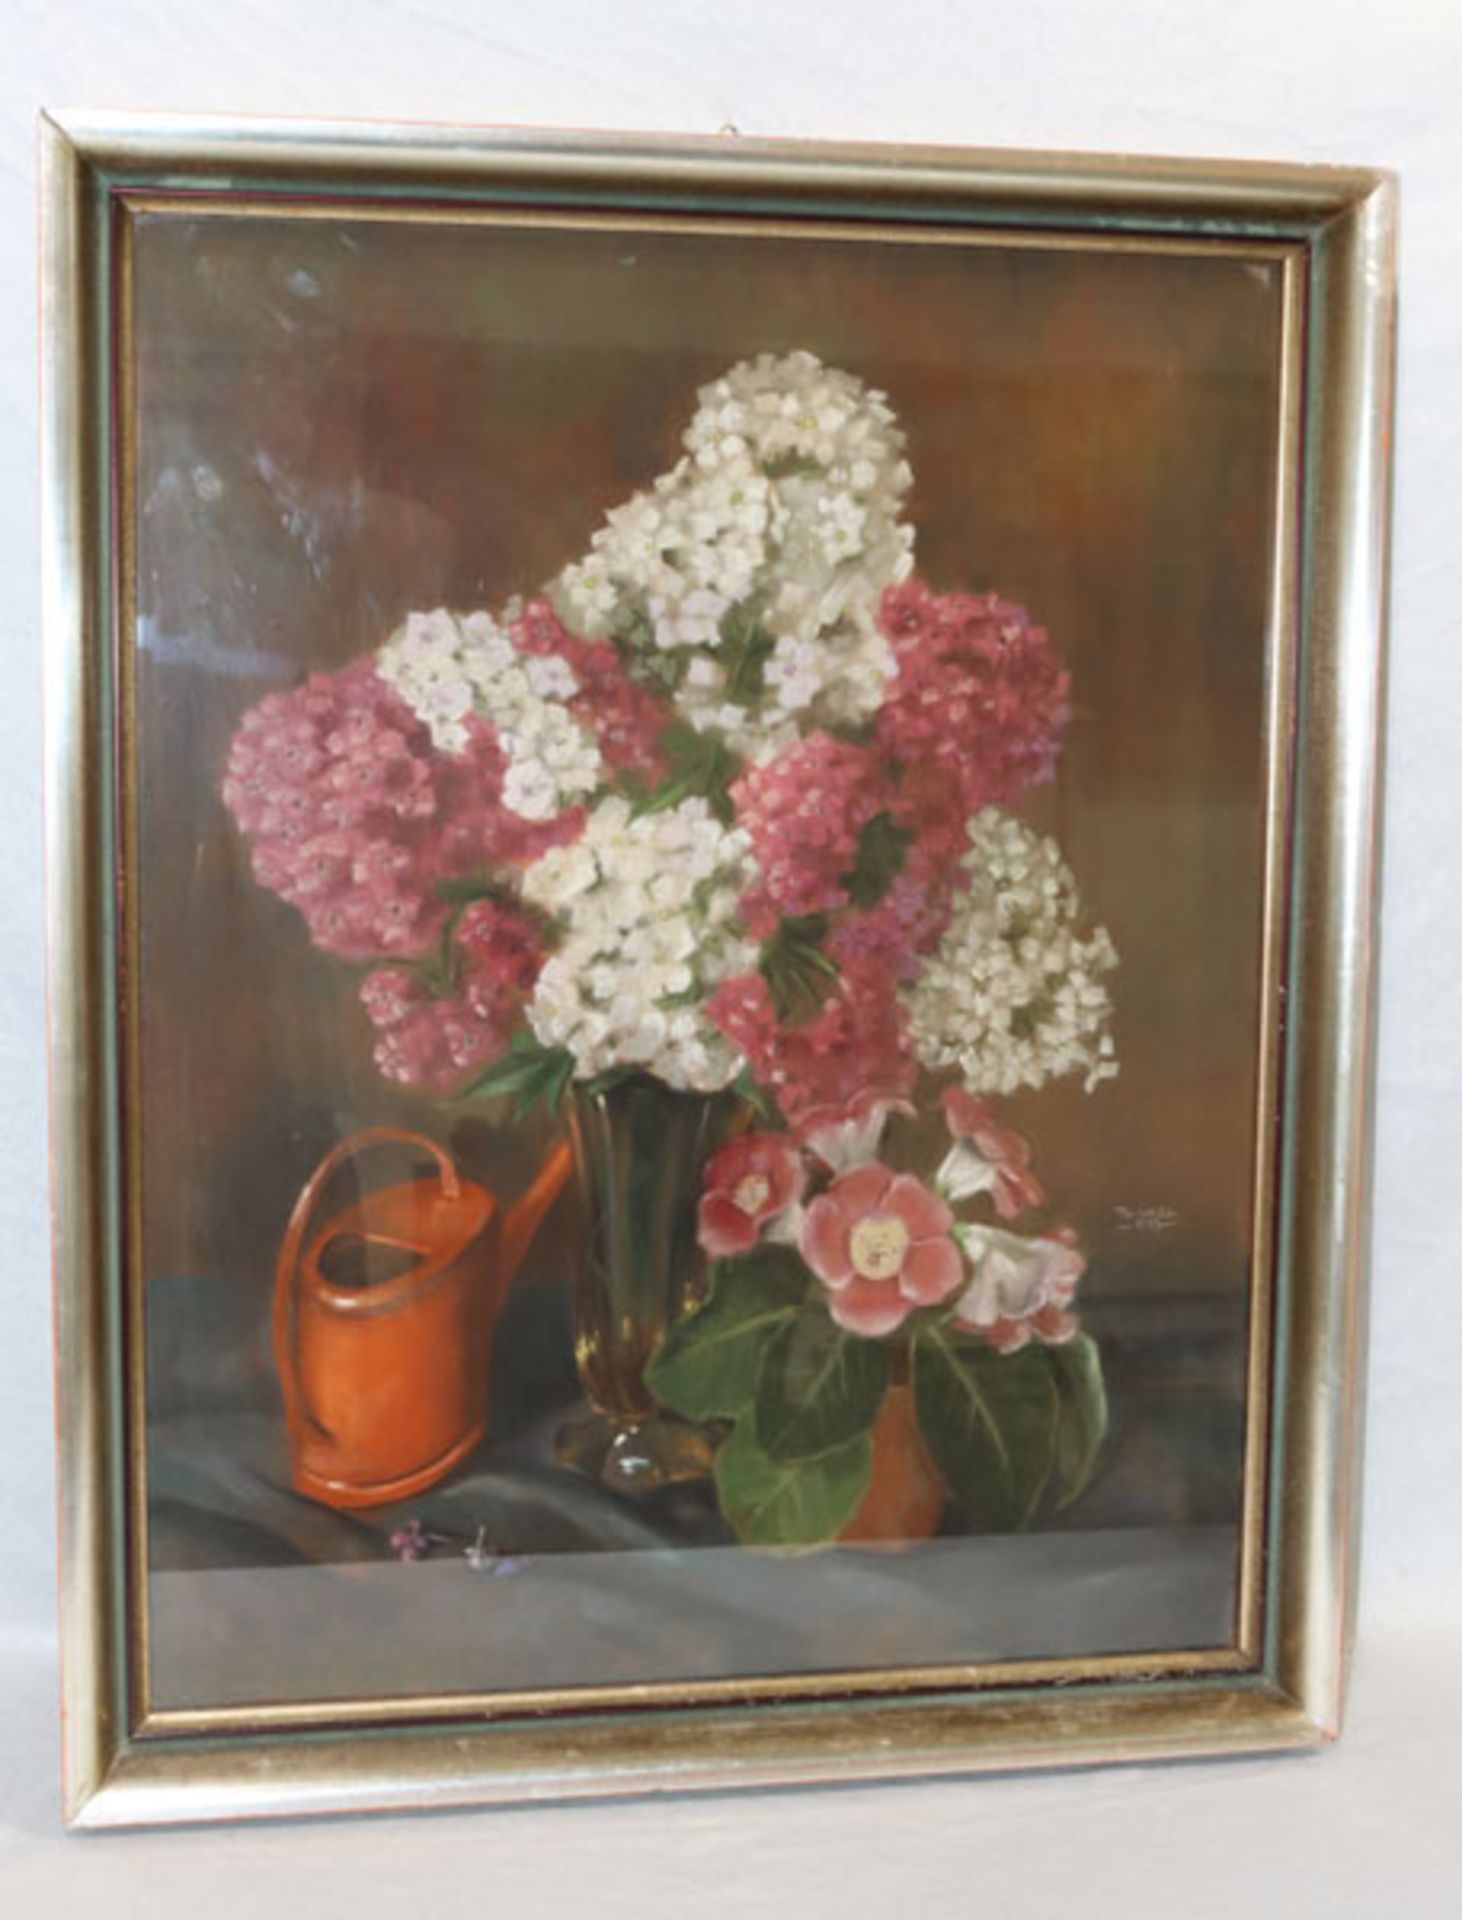 Gemälde Ölkreide 'Blumenstillleben mit Gießkanne', signiert Thanel, 57, unter Glas gerahmt, Rahmen